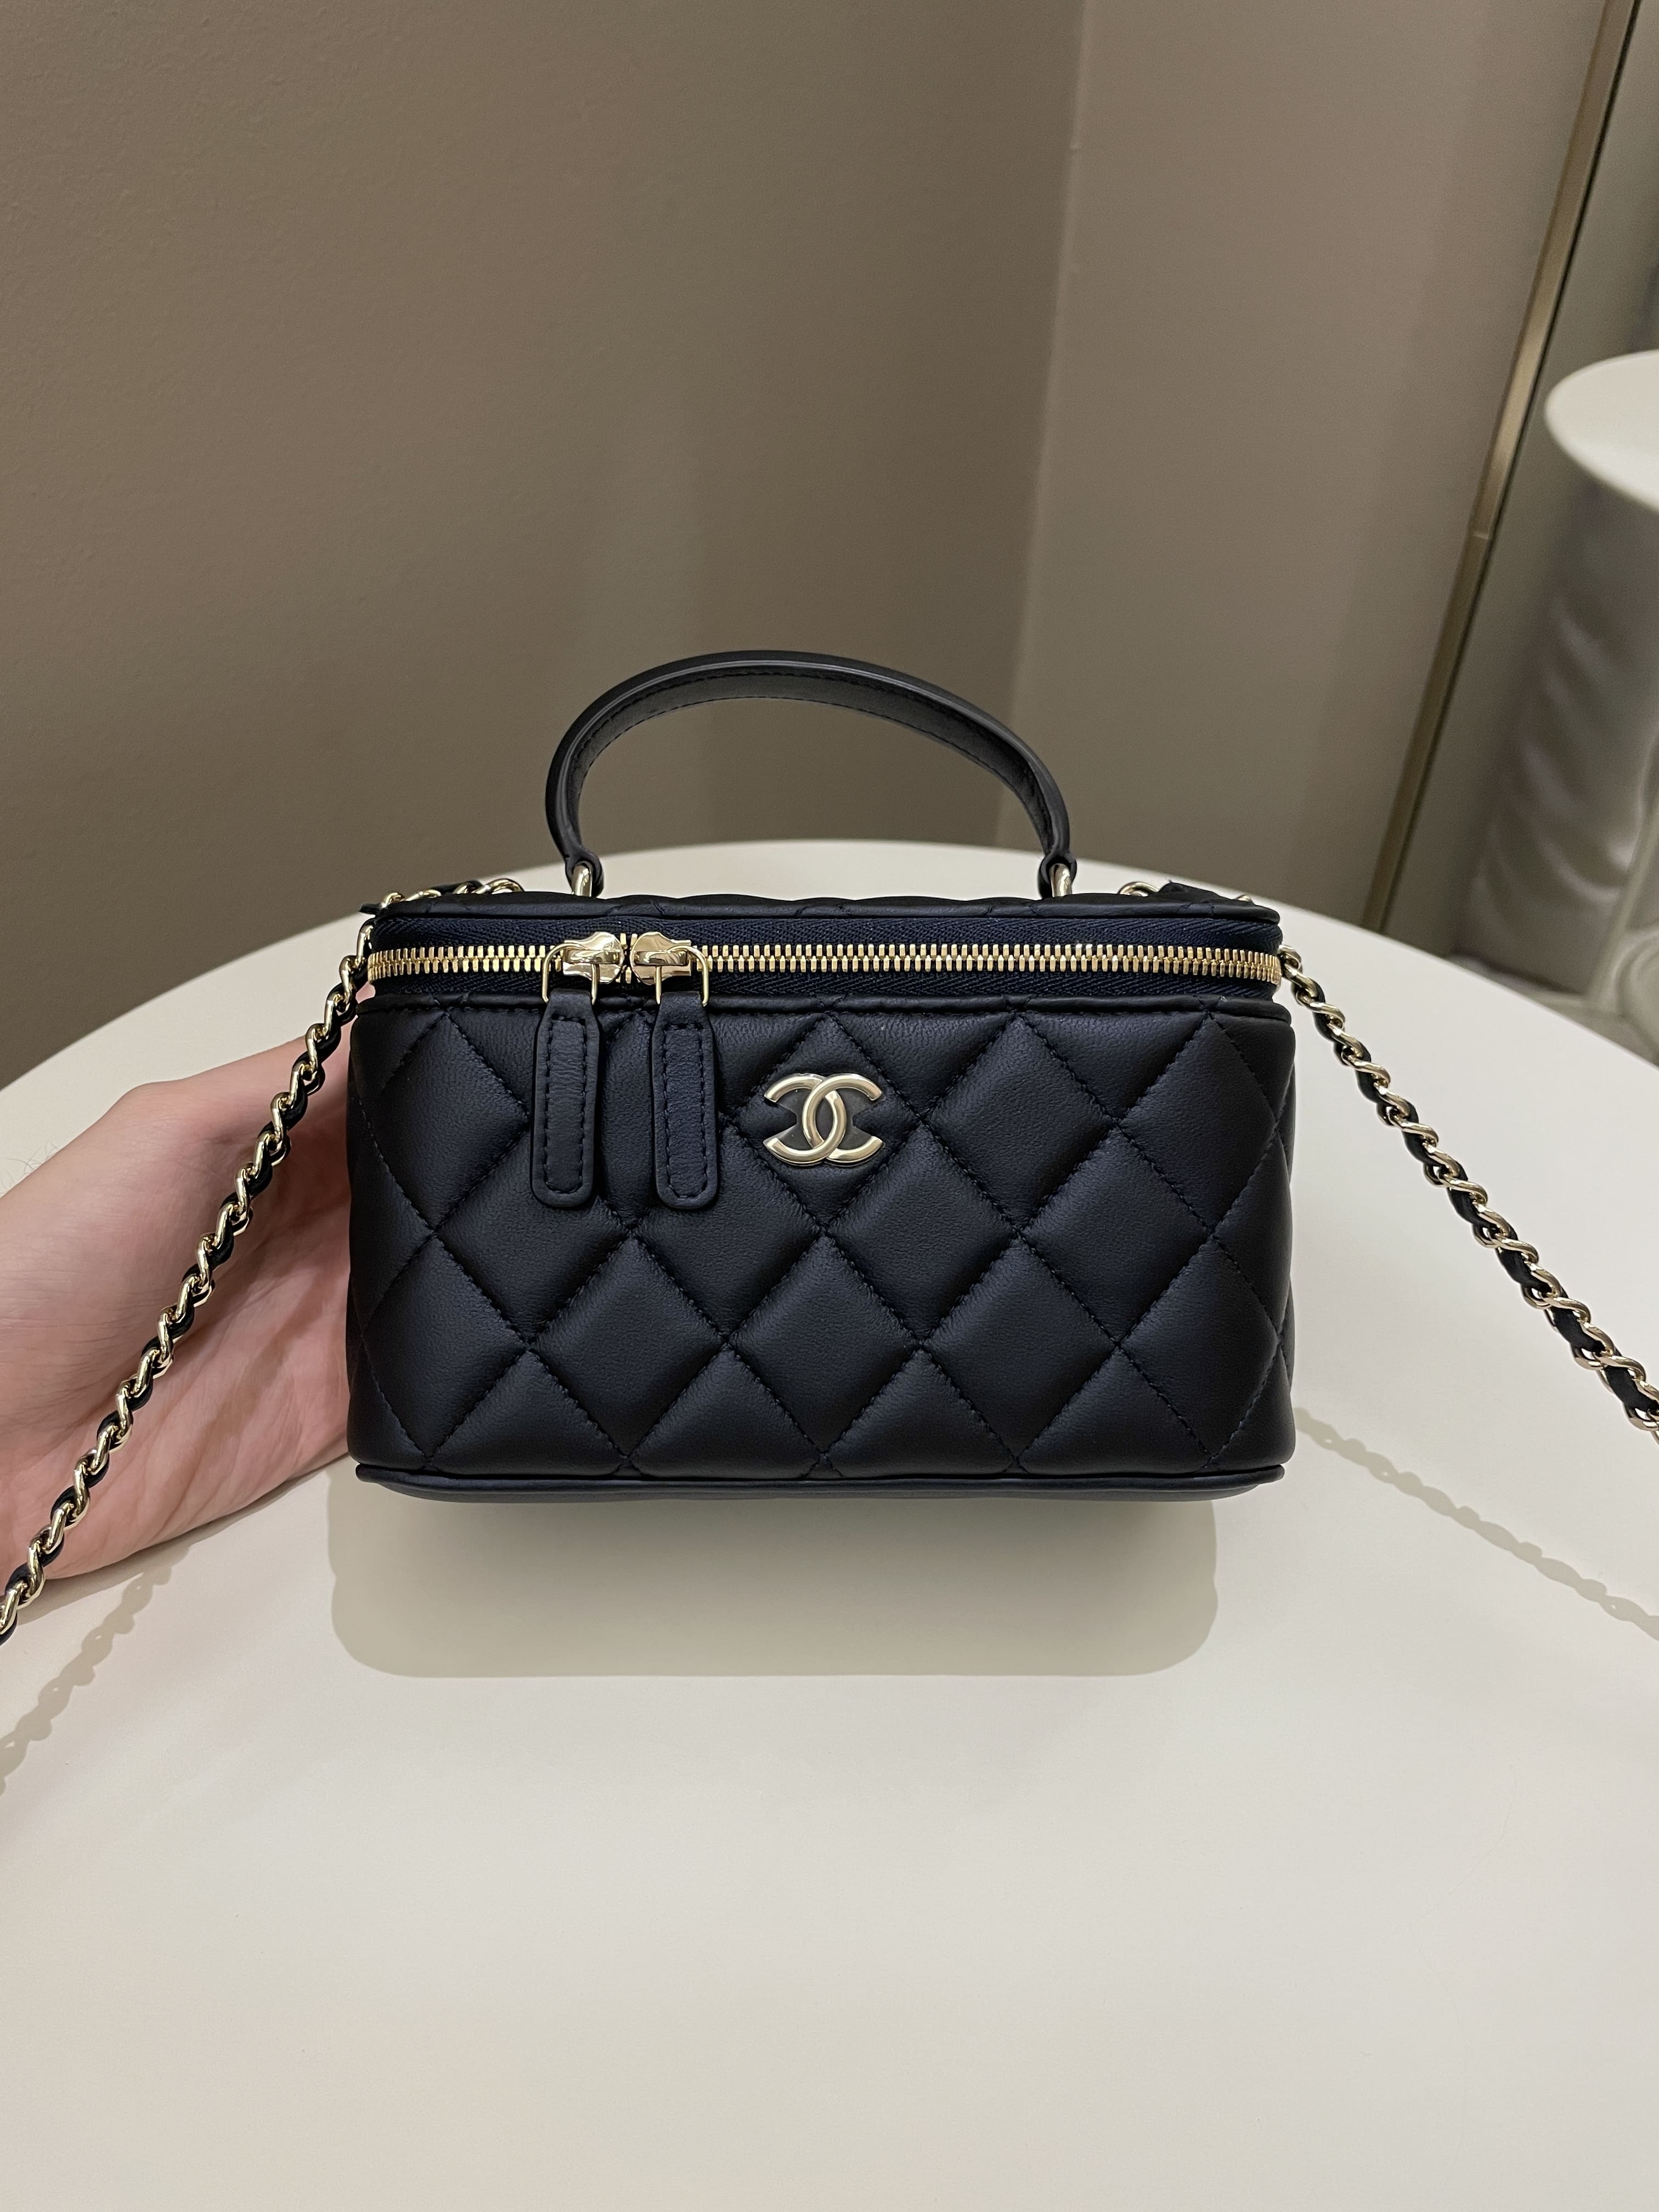 Chanel Black Quilted Lambskin Top Handle Vanity Handbag